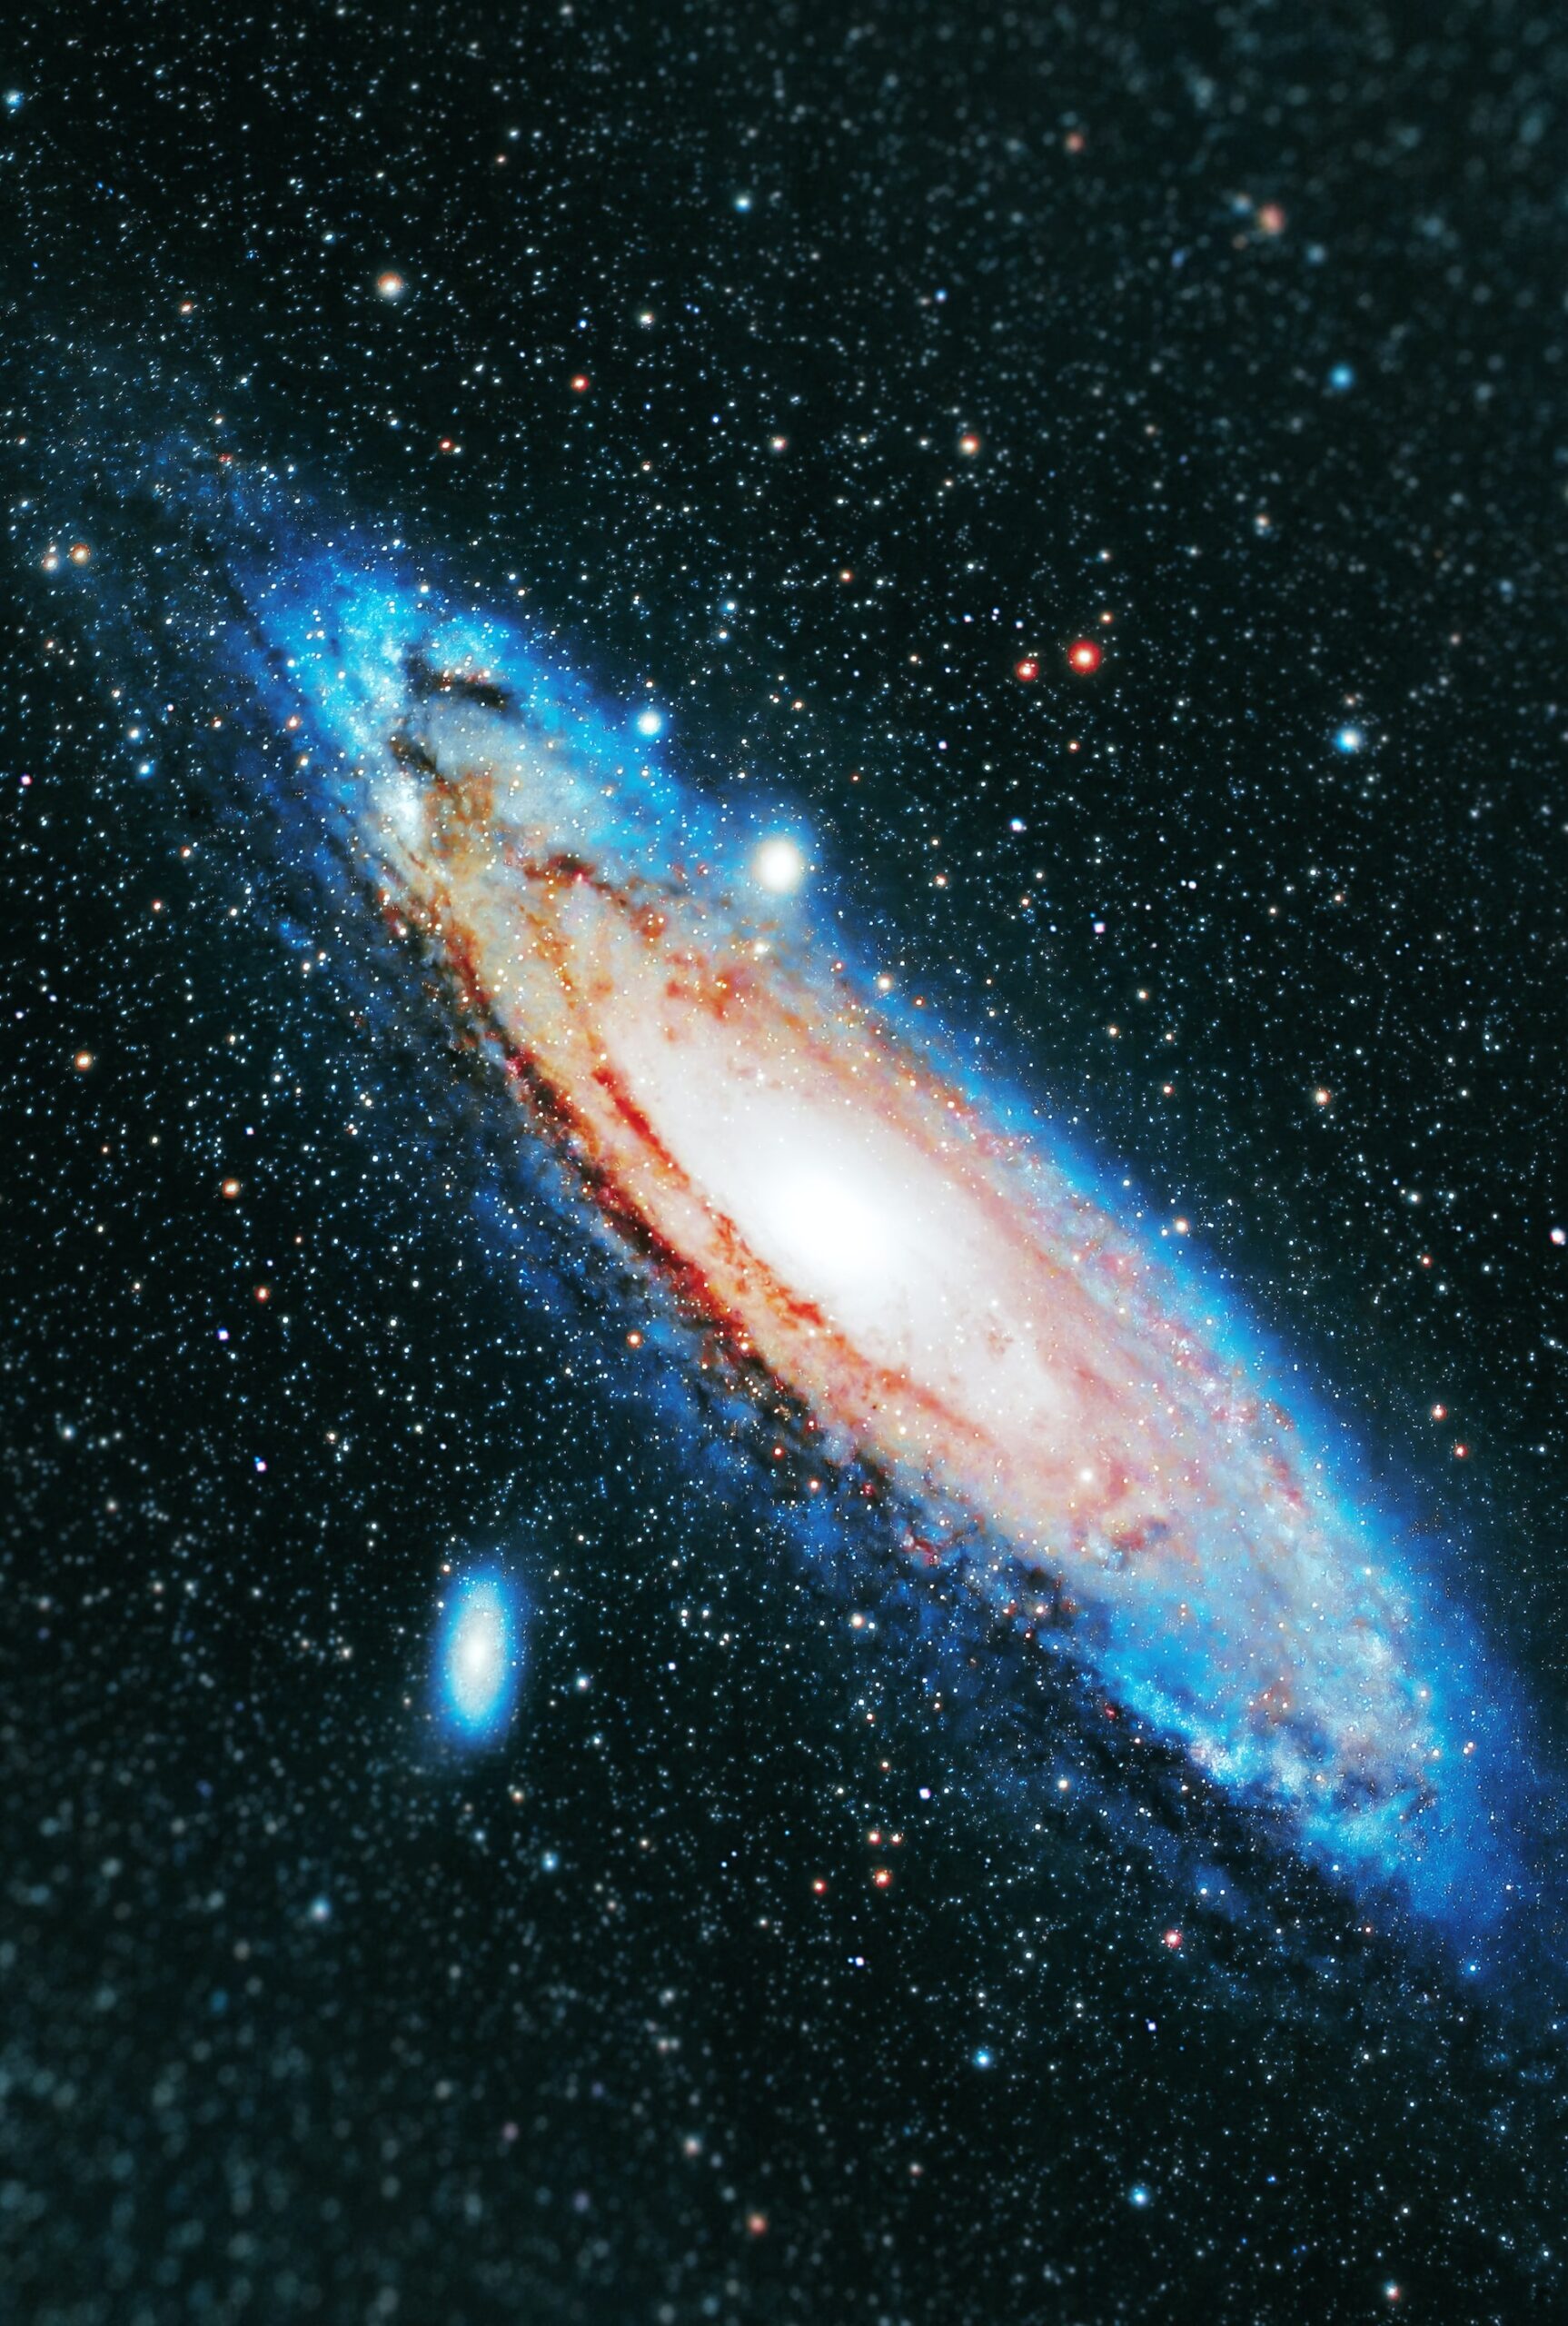 Галактика Андромеди